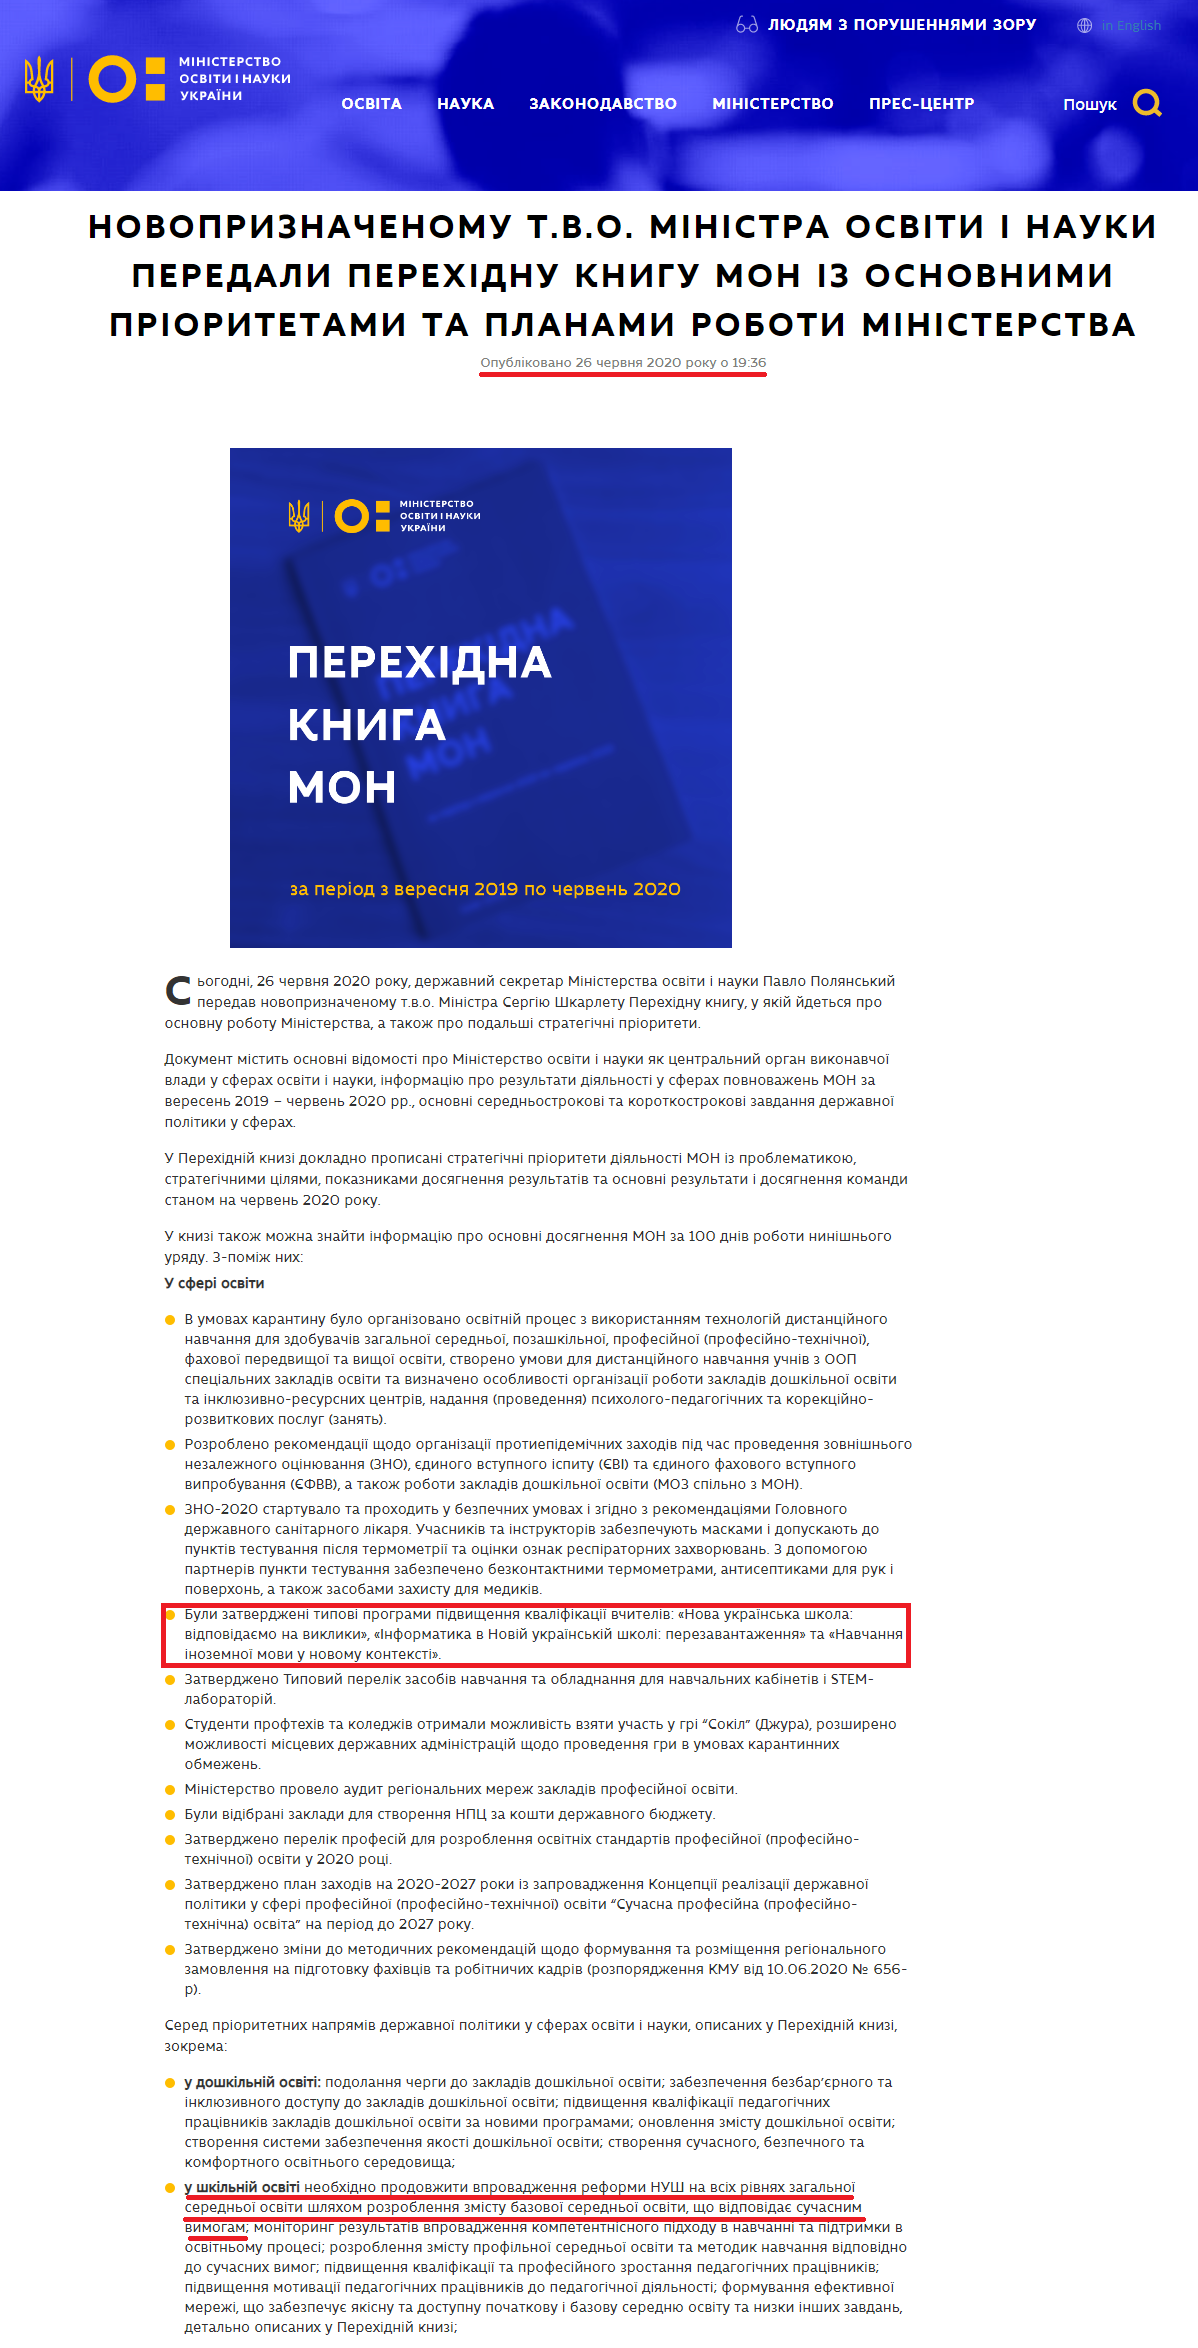 https://mon.gov.ua/ua/news/novopriznachenomu-tvo-ministra-osviti-i-nauki-peredali-perehidnu-knigu-mon-iz-osnovnimi-prioritetami-ta-planami-roboti-ministerstva